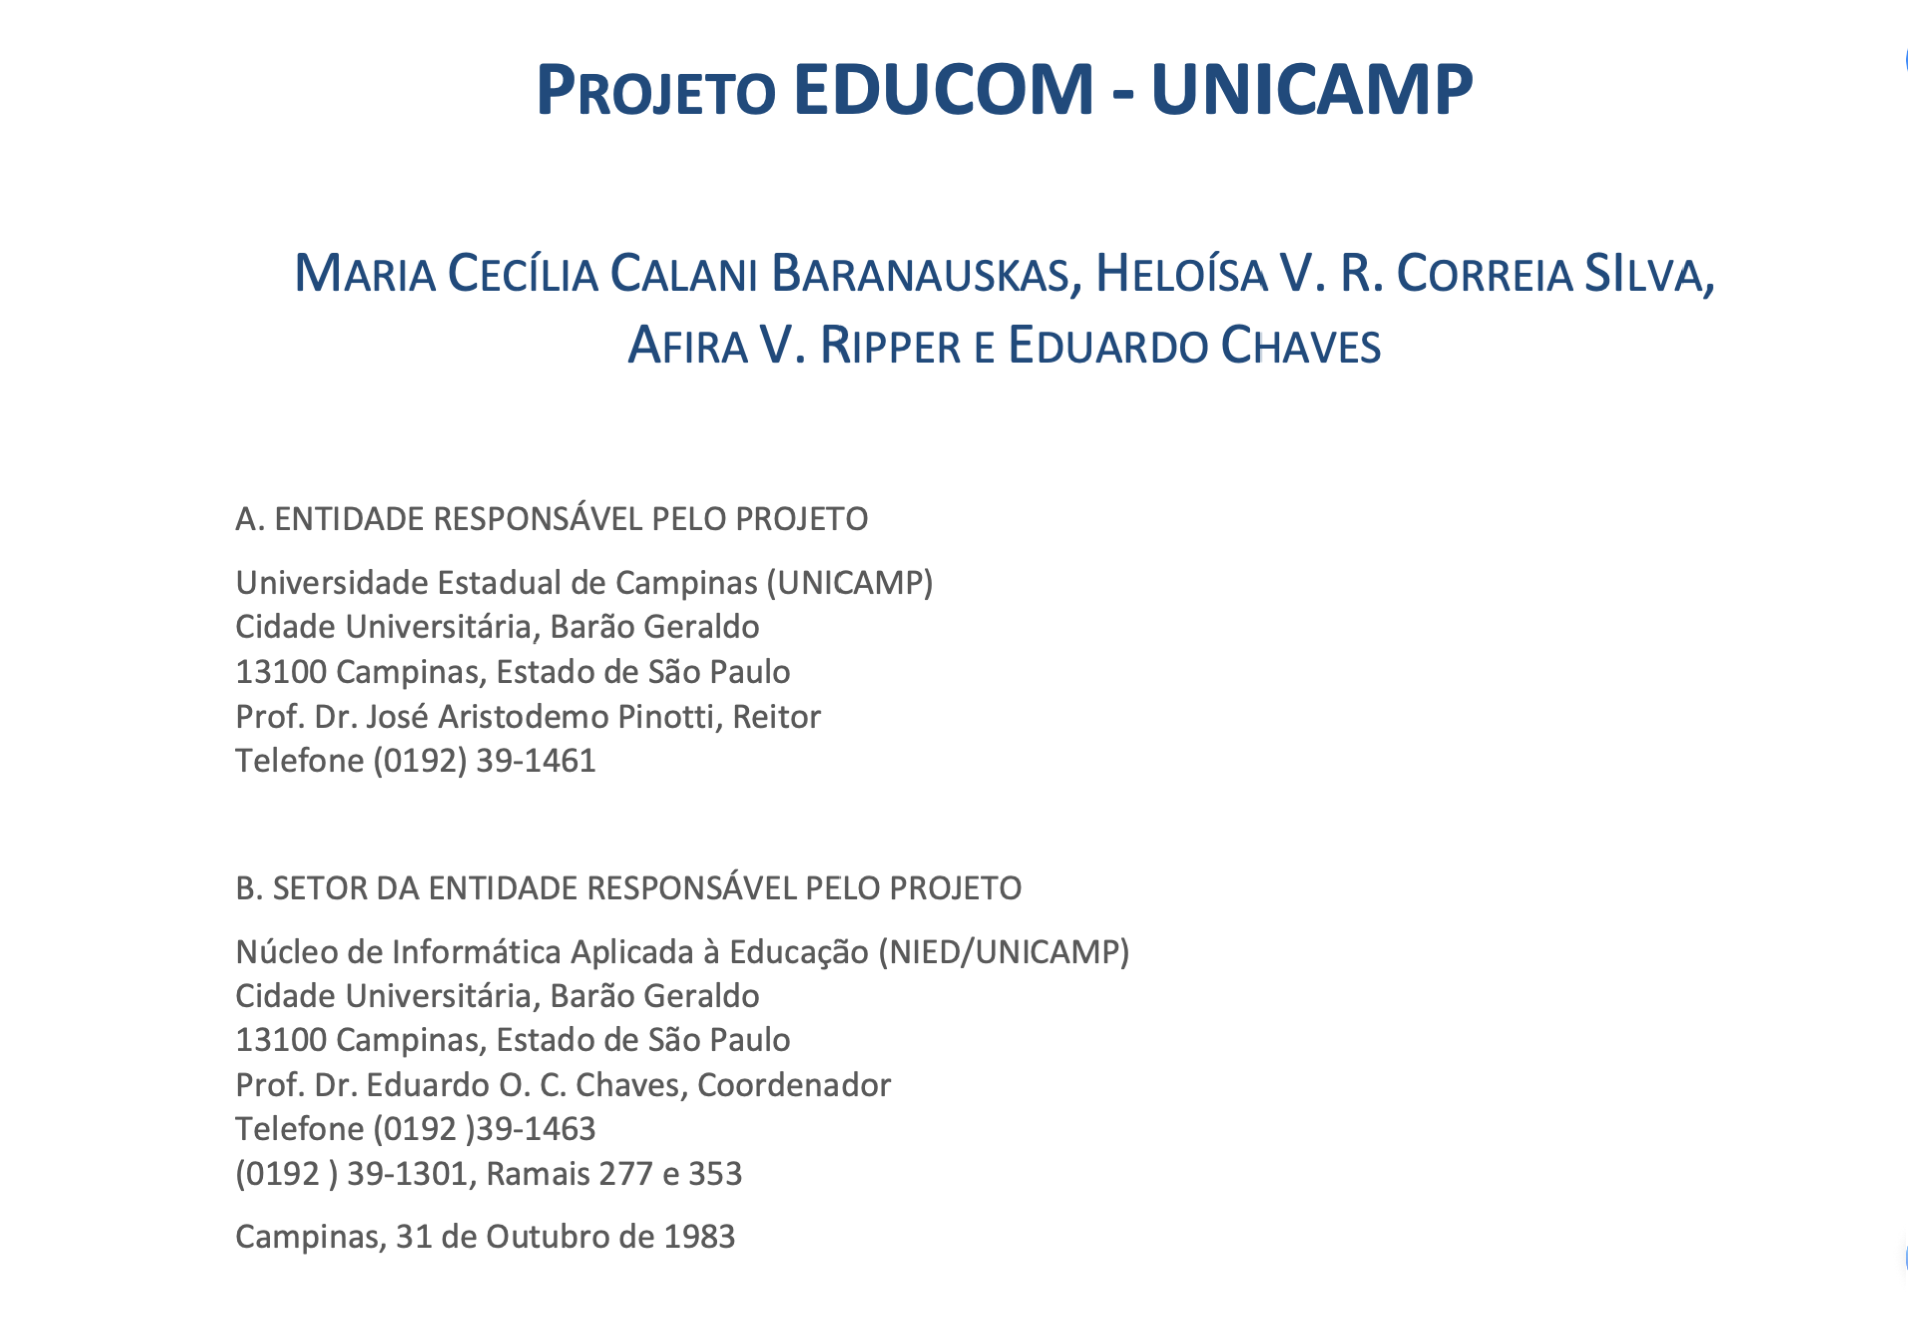 Projeto EDUCOM da UNICAMP 19831031